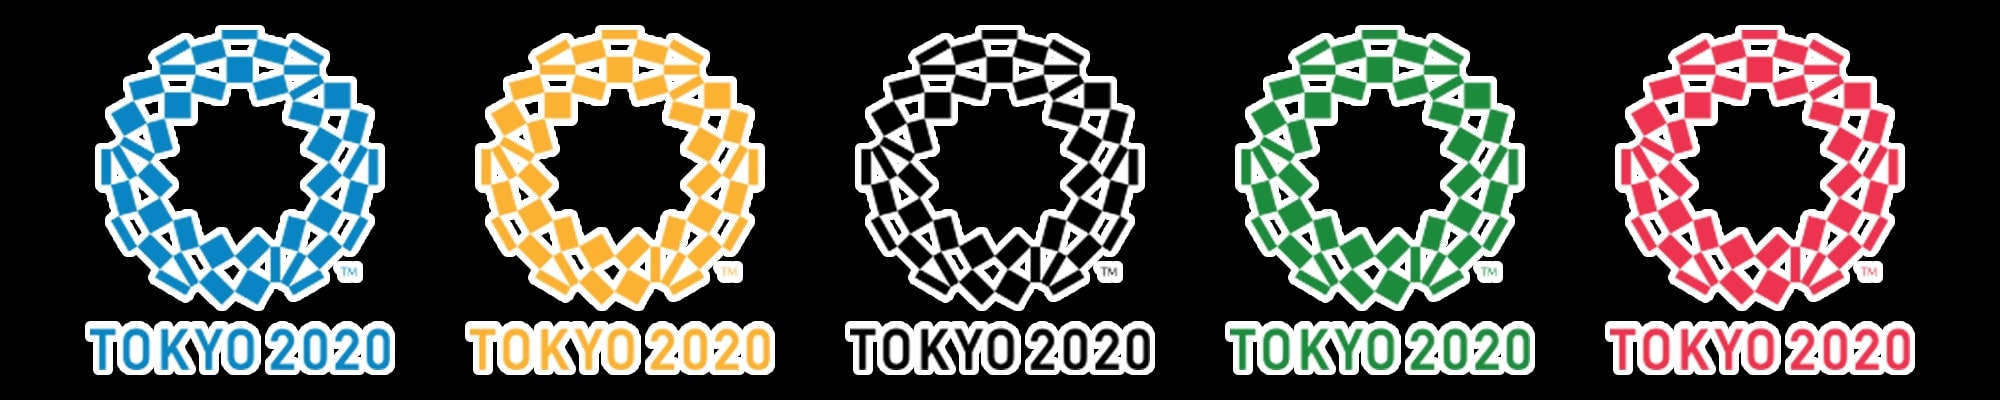 オリンピック 2020 東京